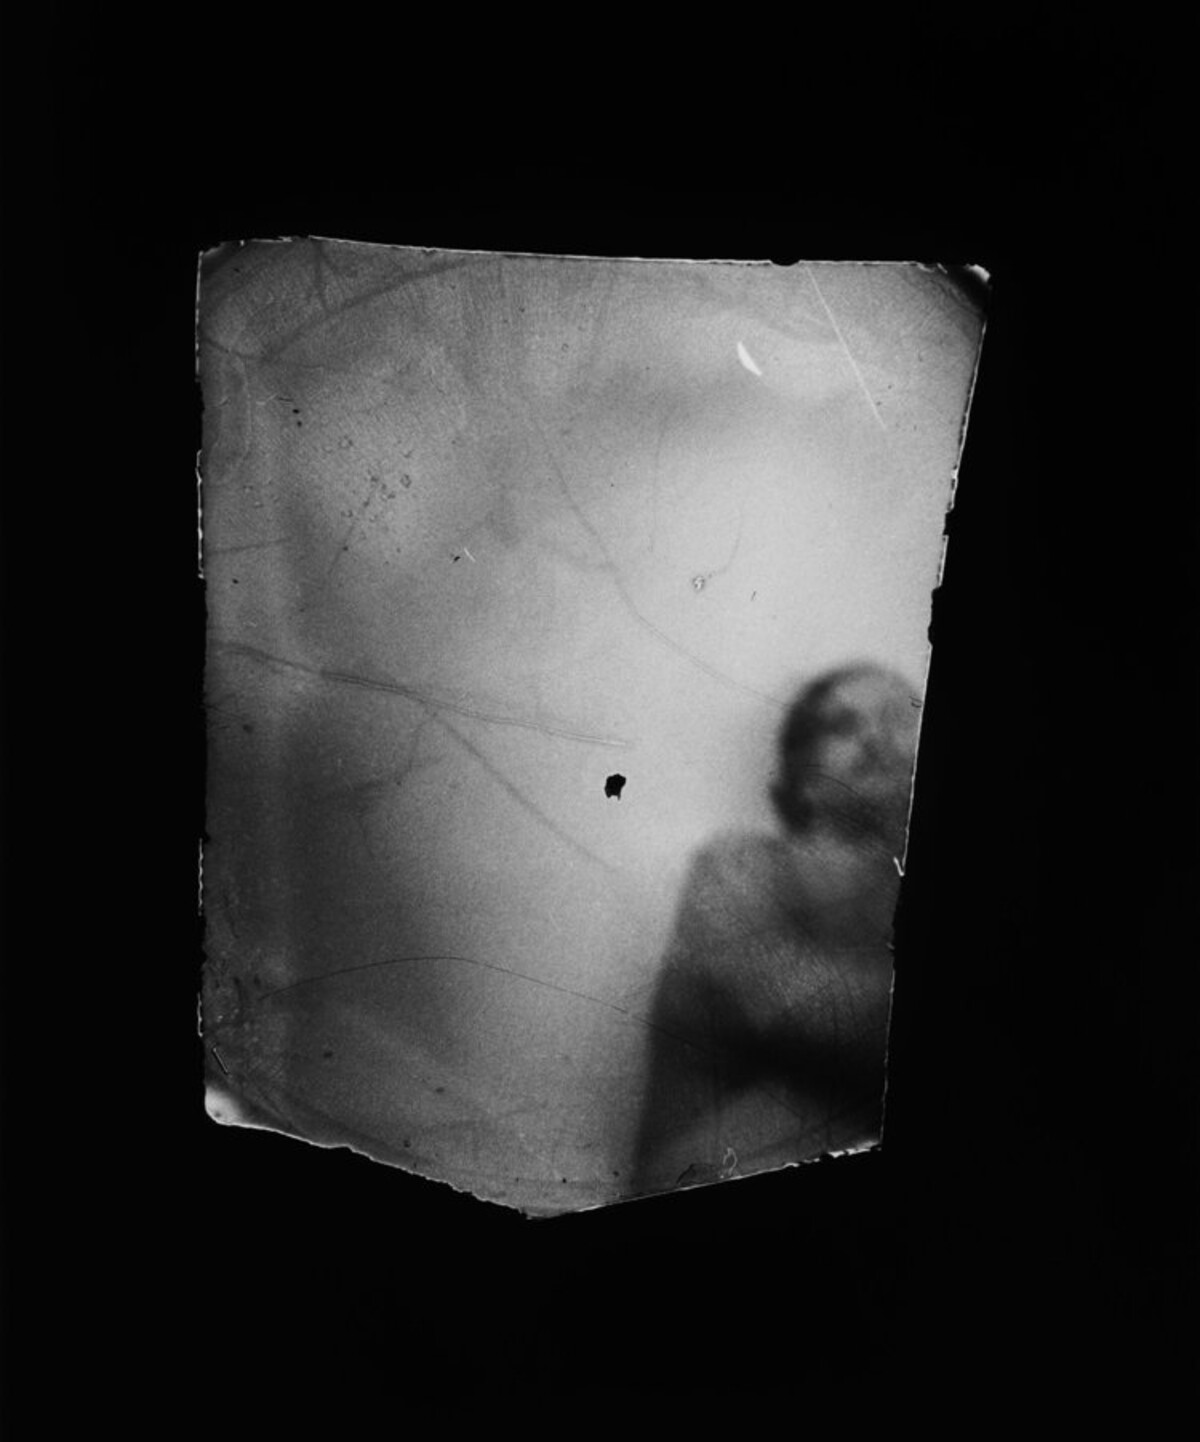 Fotografka Dani Lessnau zachytila své milence pomocí minikamery umístěné ve vagině.